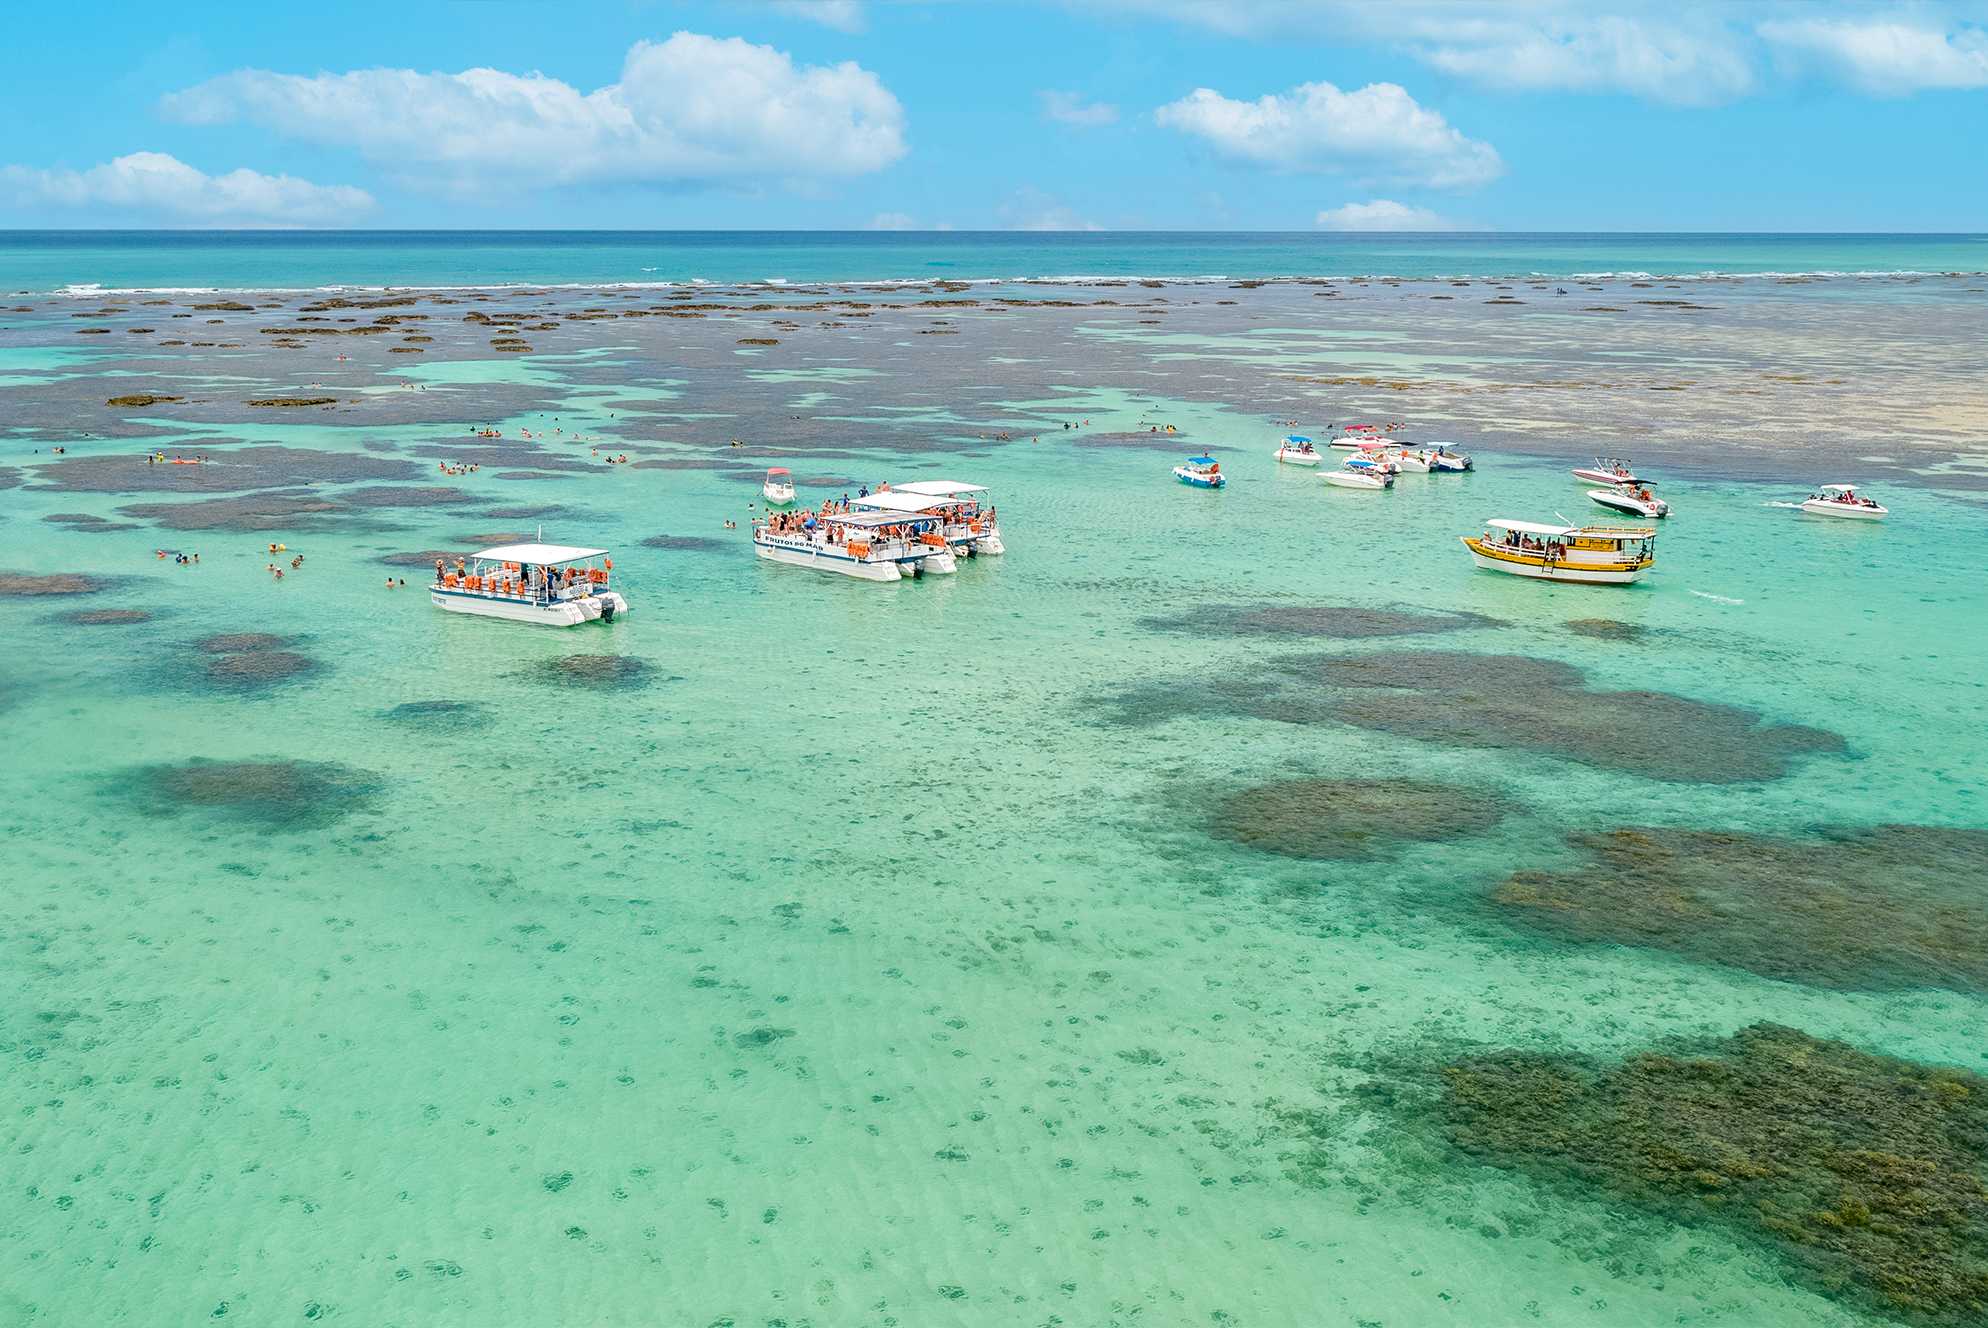 Vista aérea das piscinas naturais de Maragogi. Barcos estão ancorados nas águas, que variam em tons de verde claro a azul. As formações de recifes são visíveis sob a superfície do mar. O céu é amplo e azul com algumas nuvens brancas.